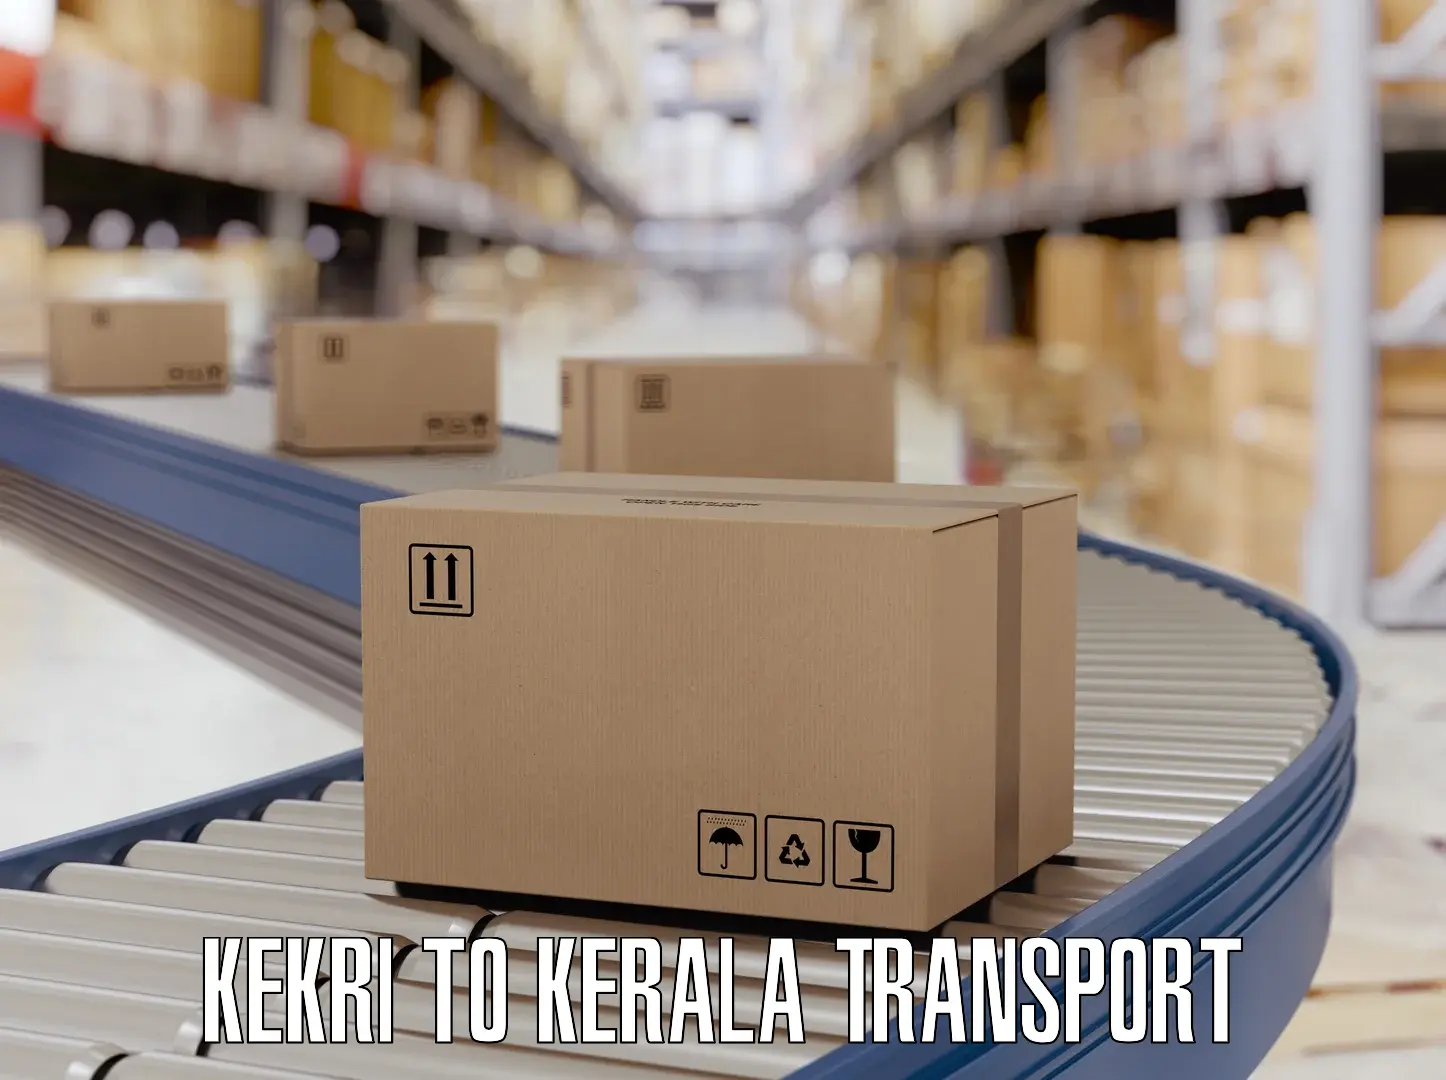 Transport services Kekri to Cochin Port Kochi